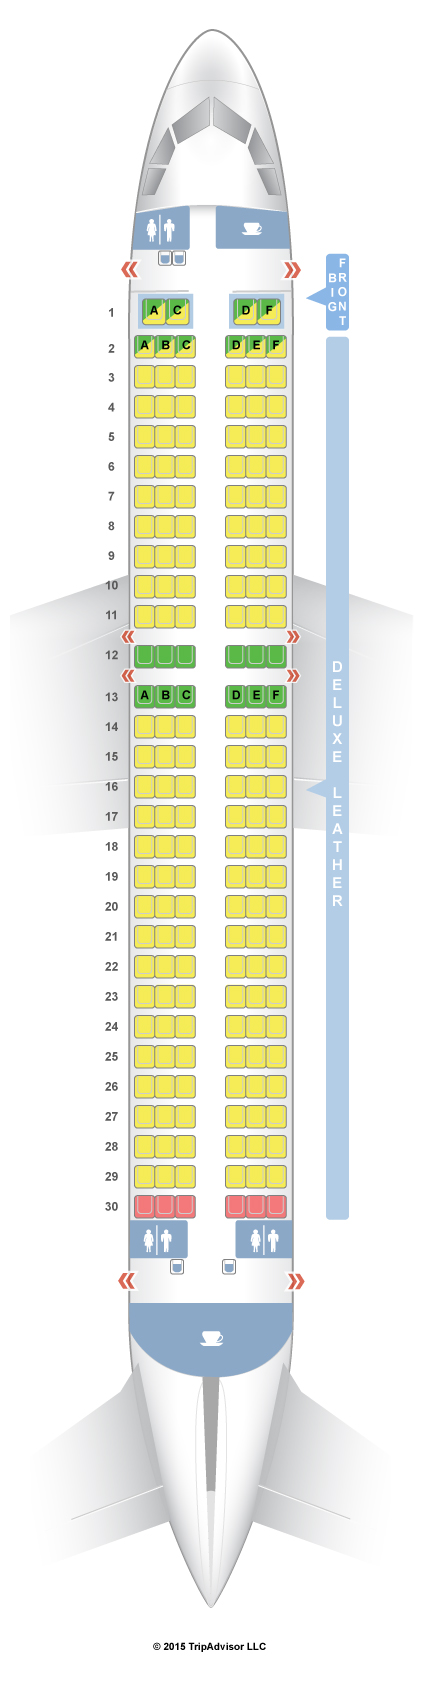 Plane Seating Chart Spirit